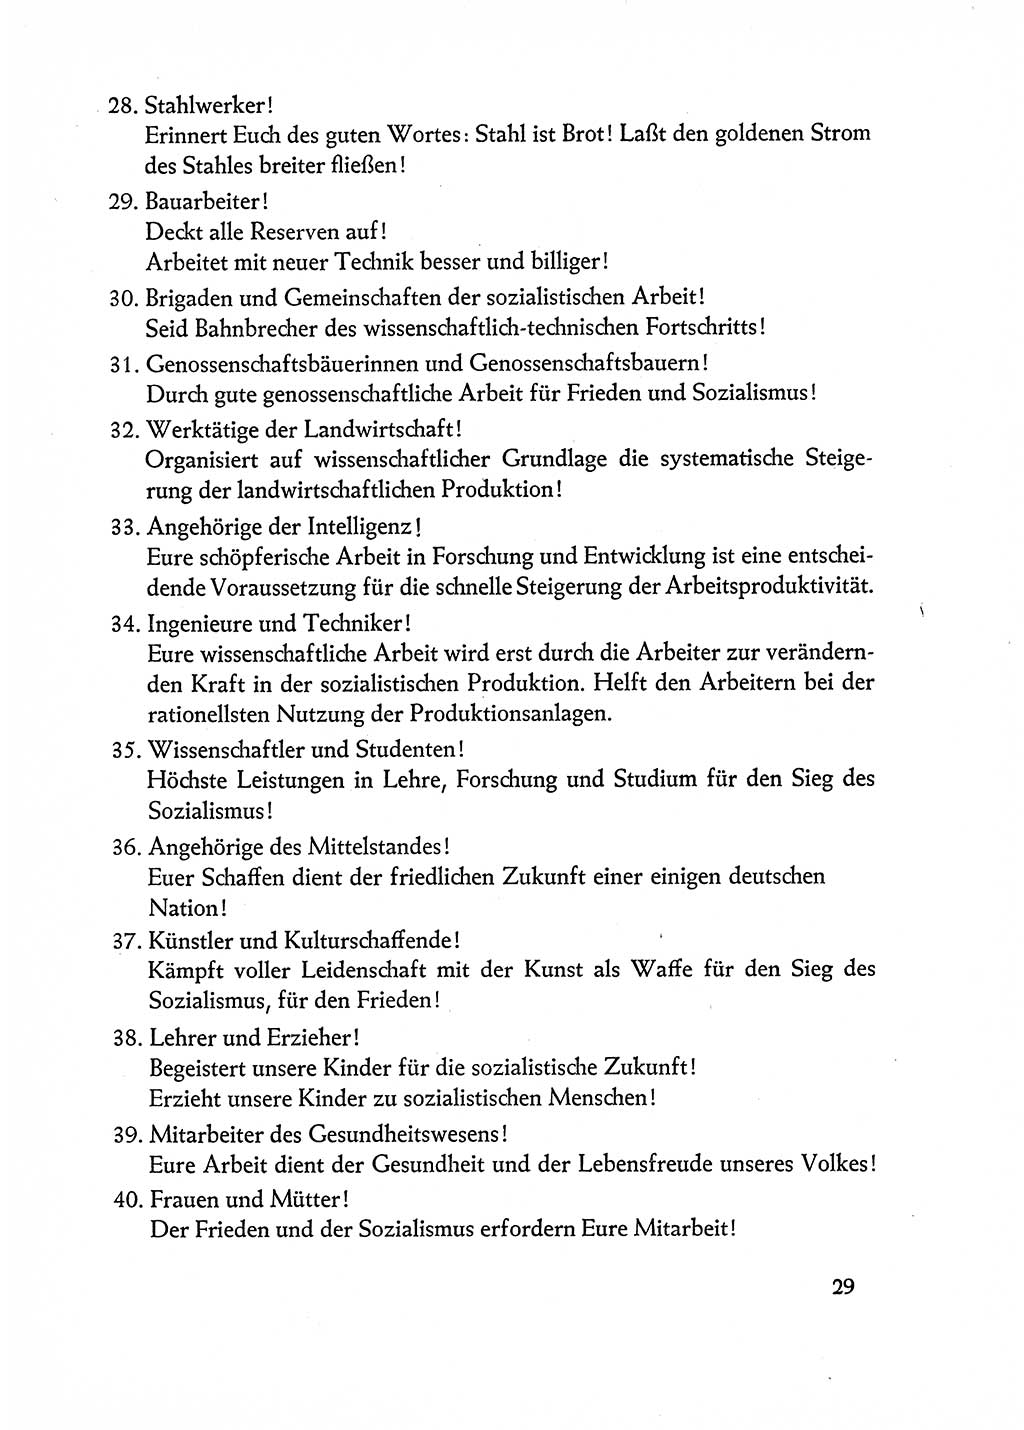 Dokumente der Sozialistischen Einheitspartei Deutschlands (SED) [Deutsche Demokratische Republik (DDR)] 1962-1963, Seite 29 (Dok. SED DDR 1962-1963, S. 29)